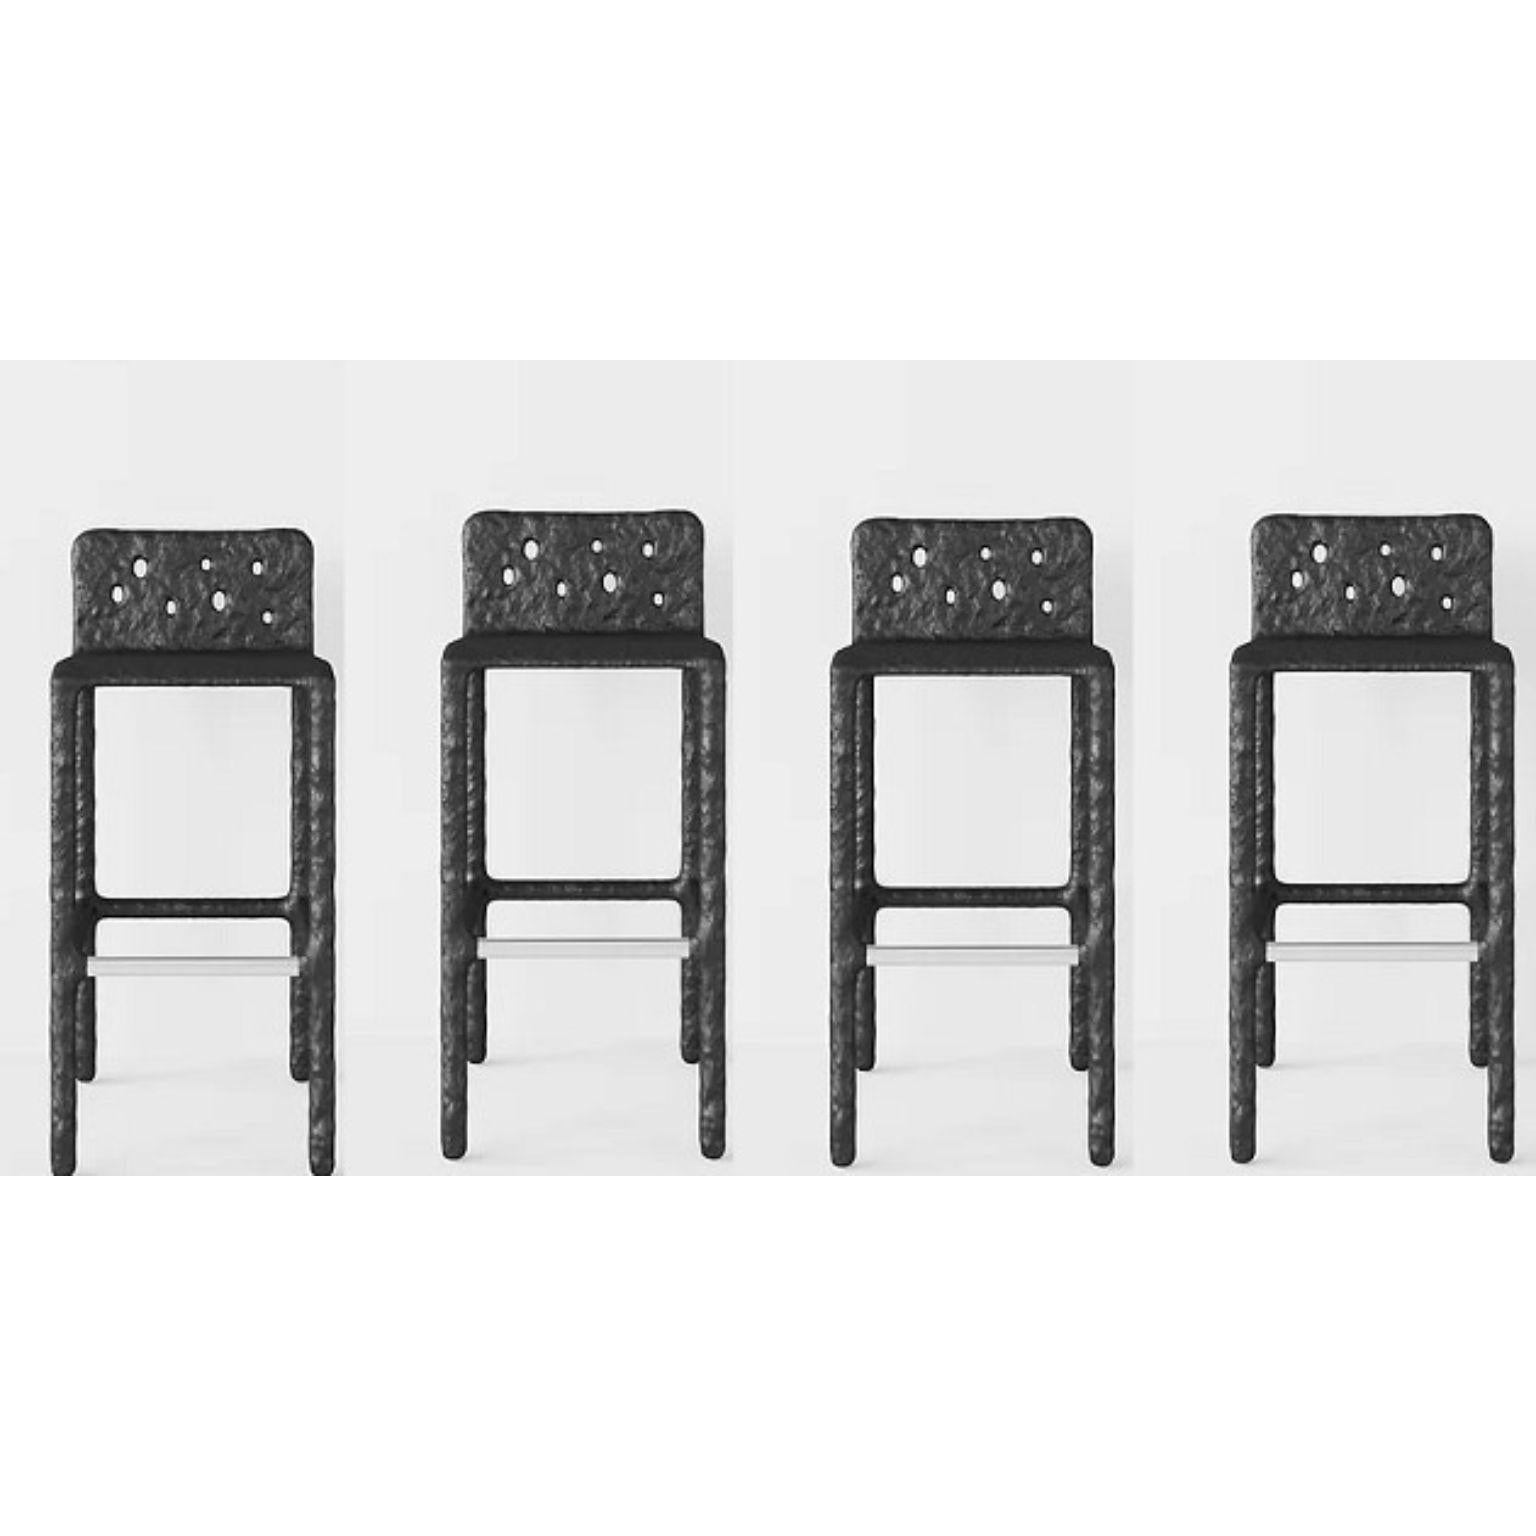 Ensemble de 4 chaises contemporaines noires sculptées par Faina
Design : Victoriya Yakusha
MATERIAL : acier, caoutchouc de lin, biopolymère, cellulose.
Dimensions : Hauteur : 106 x Largeur : 45 x Largeur de la place assise : 49 Hauteur des pieds :